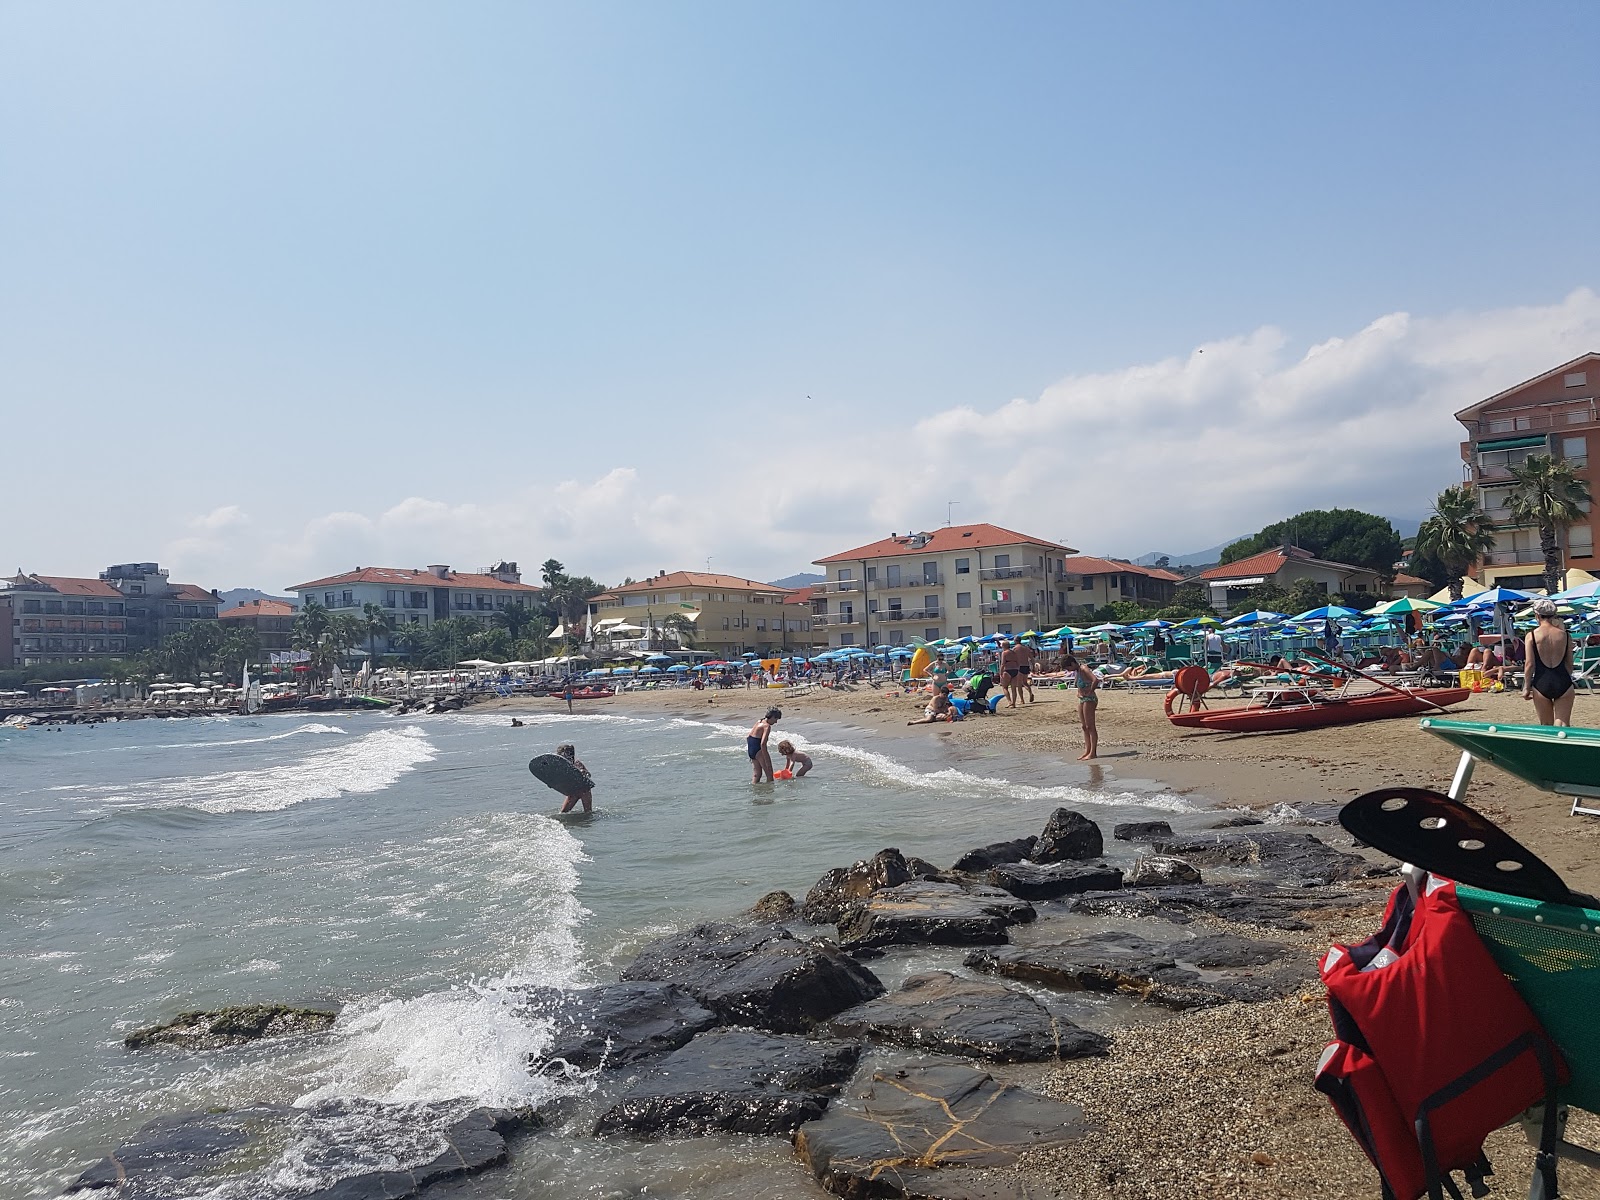 Photo de Diano Marina beach - endroit populaire parmi les connaisseurs de la détente